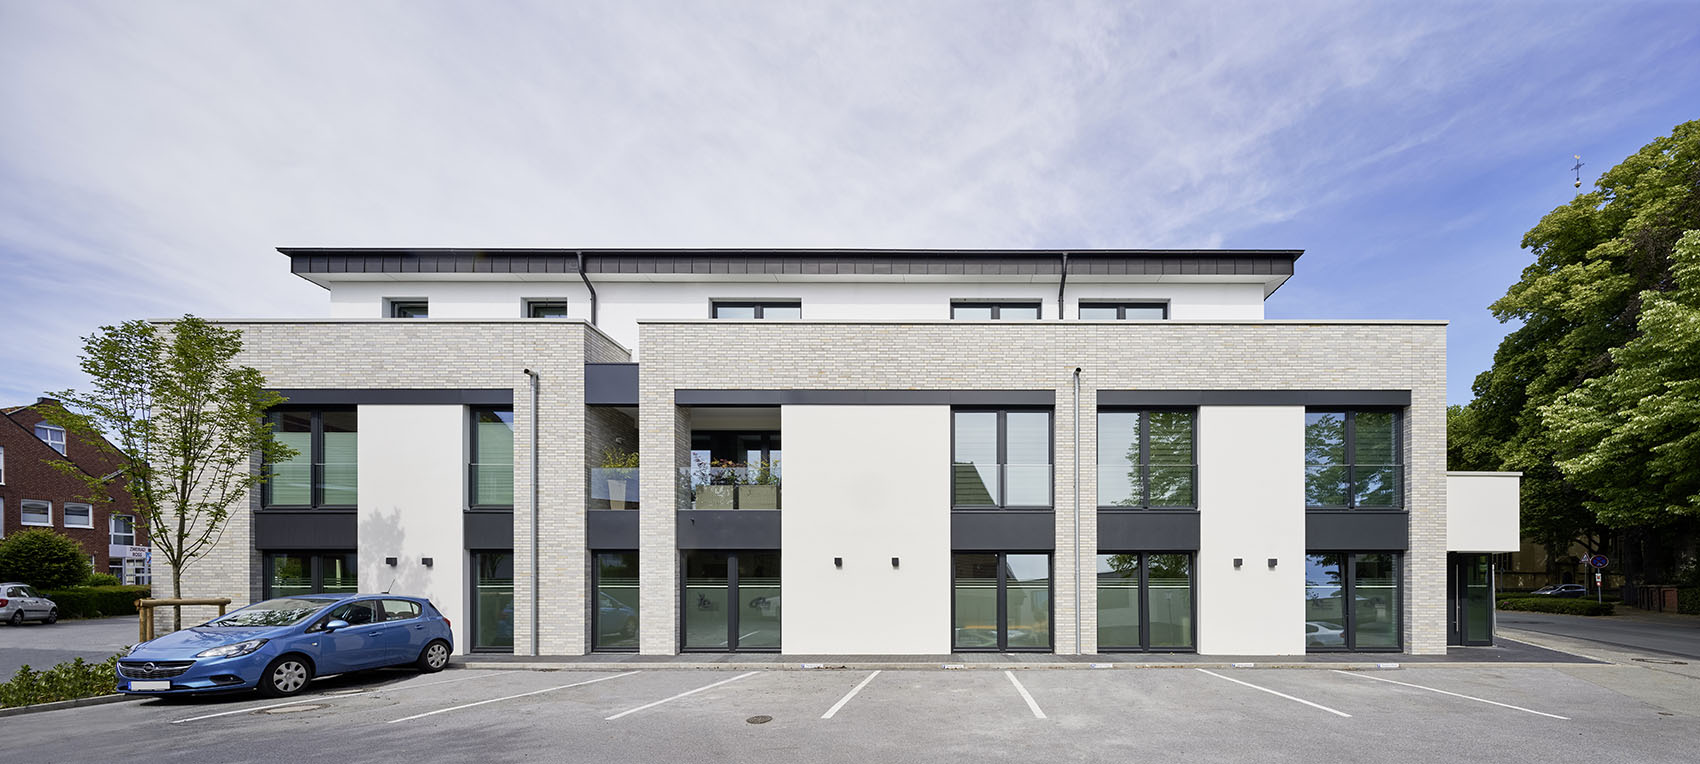 Modernes Therapiezentrum in Münsterland | Architekt in Osnabrück